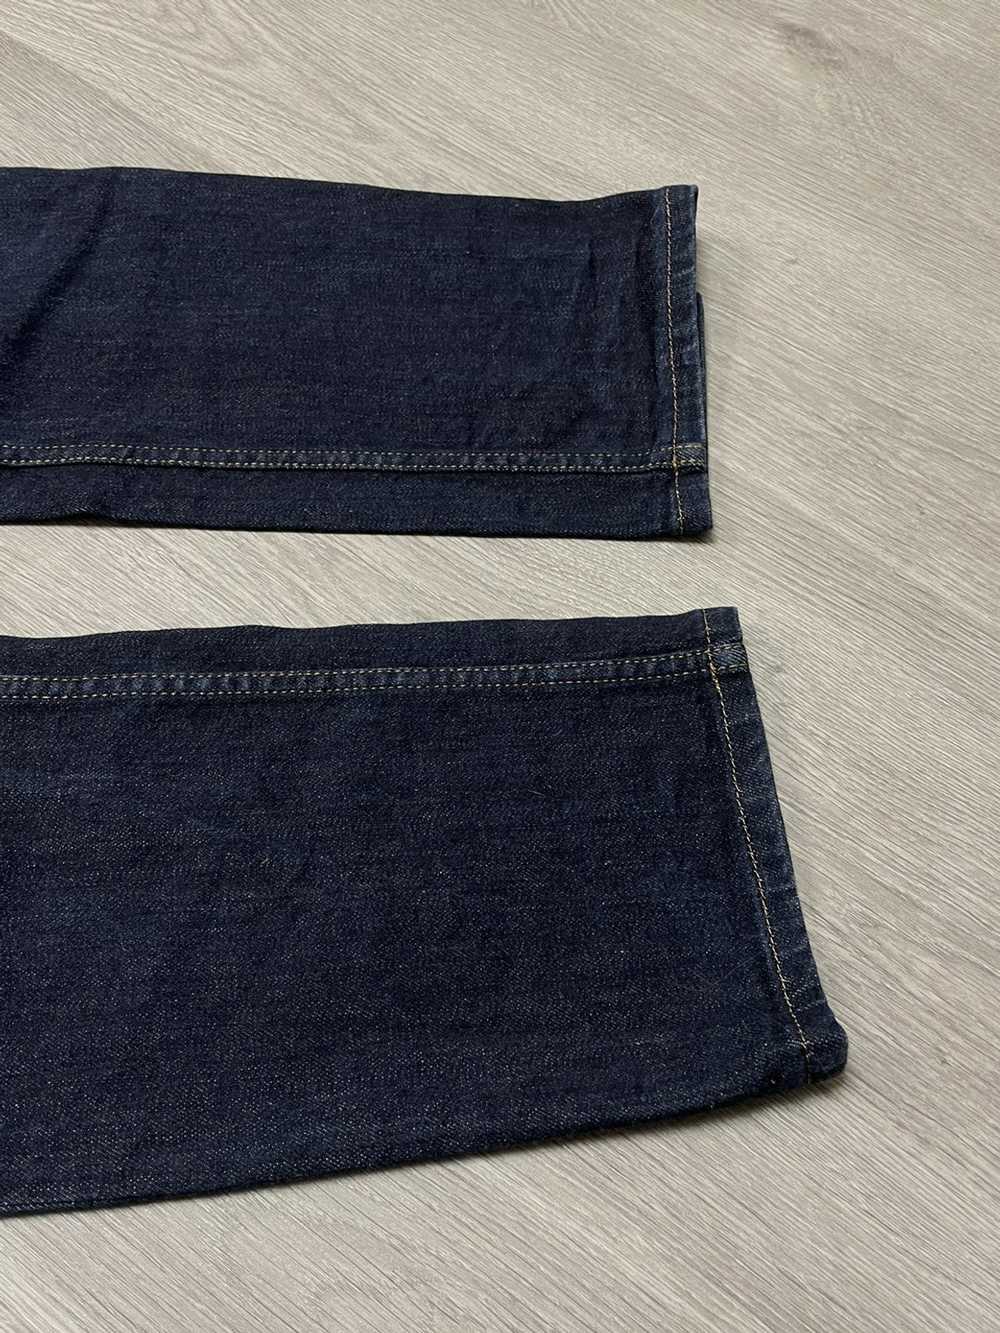 Prada × Streetwear × Vintage Prada jeans - image 4